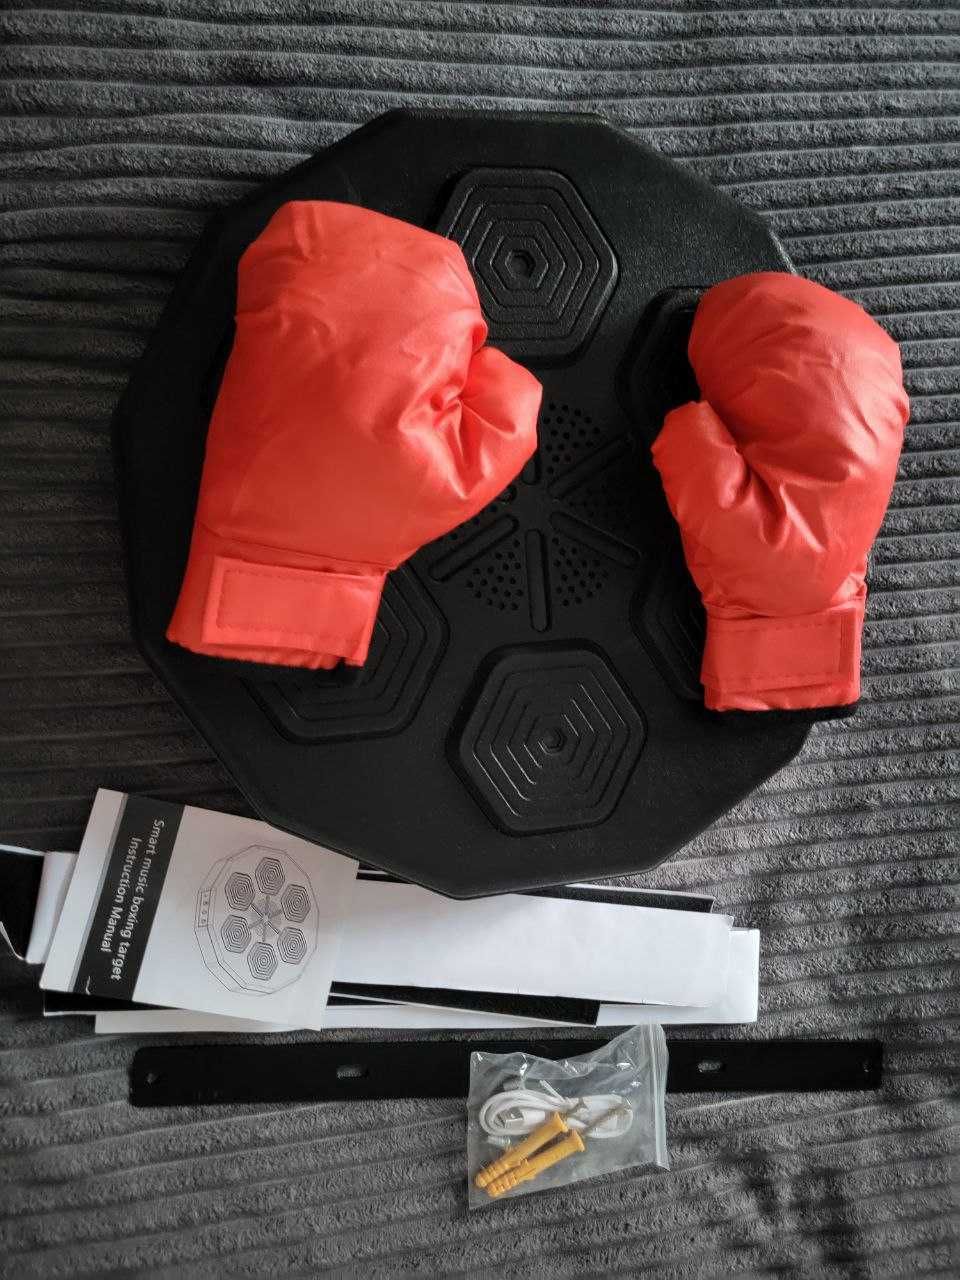 Настінна боксерська мішень 40х40х7,5 см інтерактивна мішень для боксу